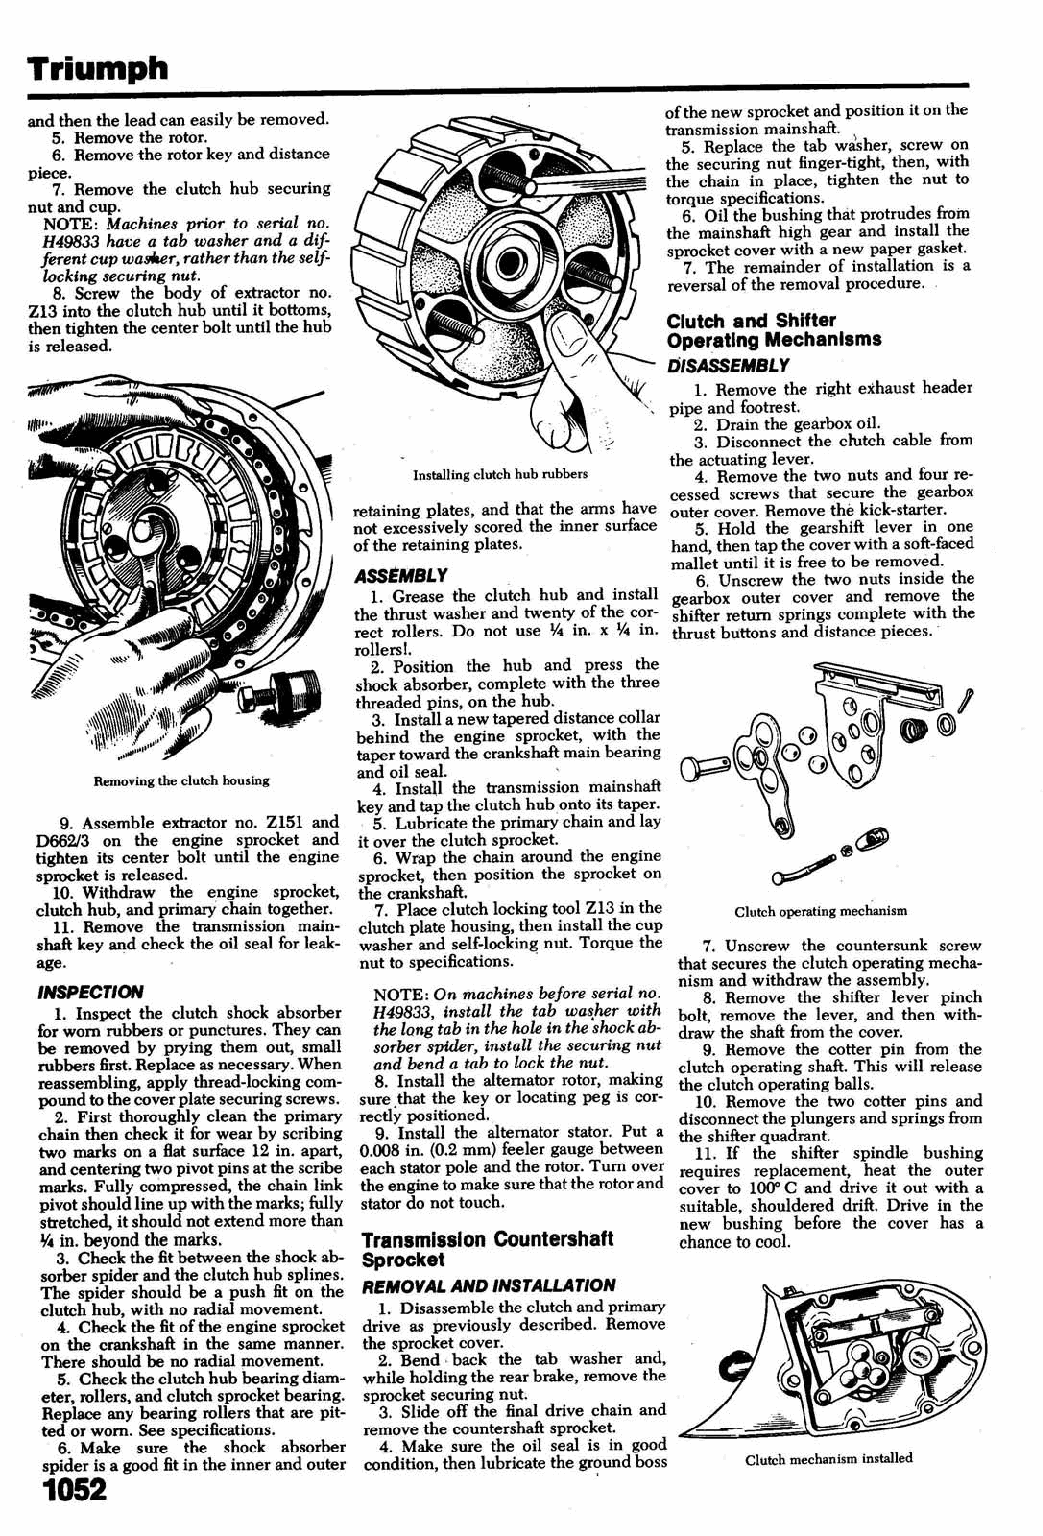 1956-1962 Triumph Bonneville T120 Service Manual